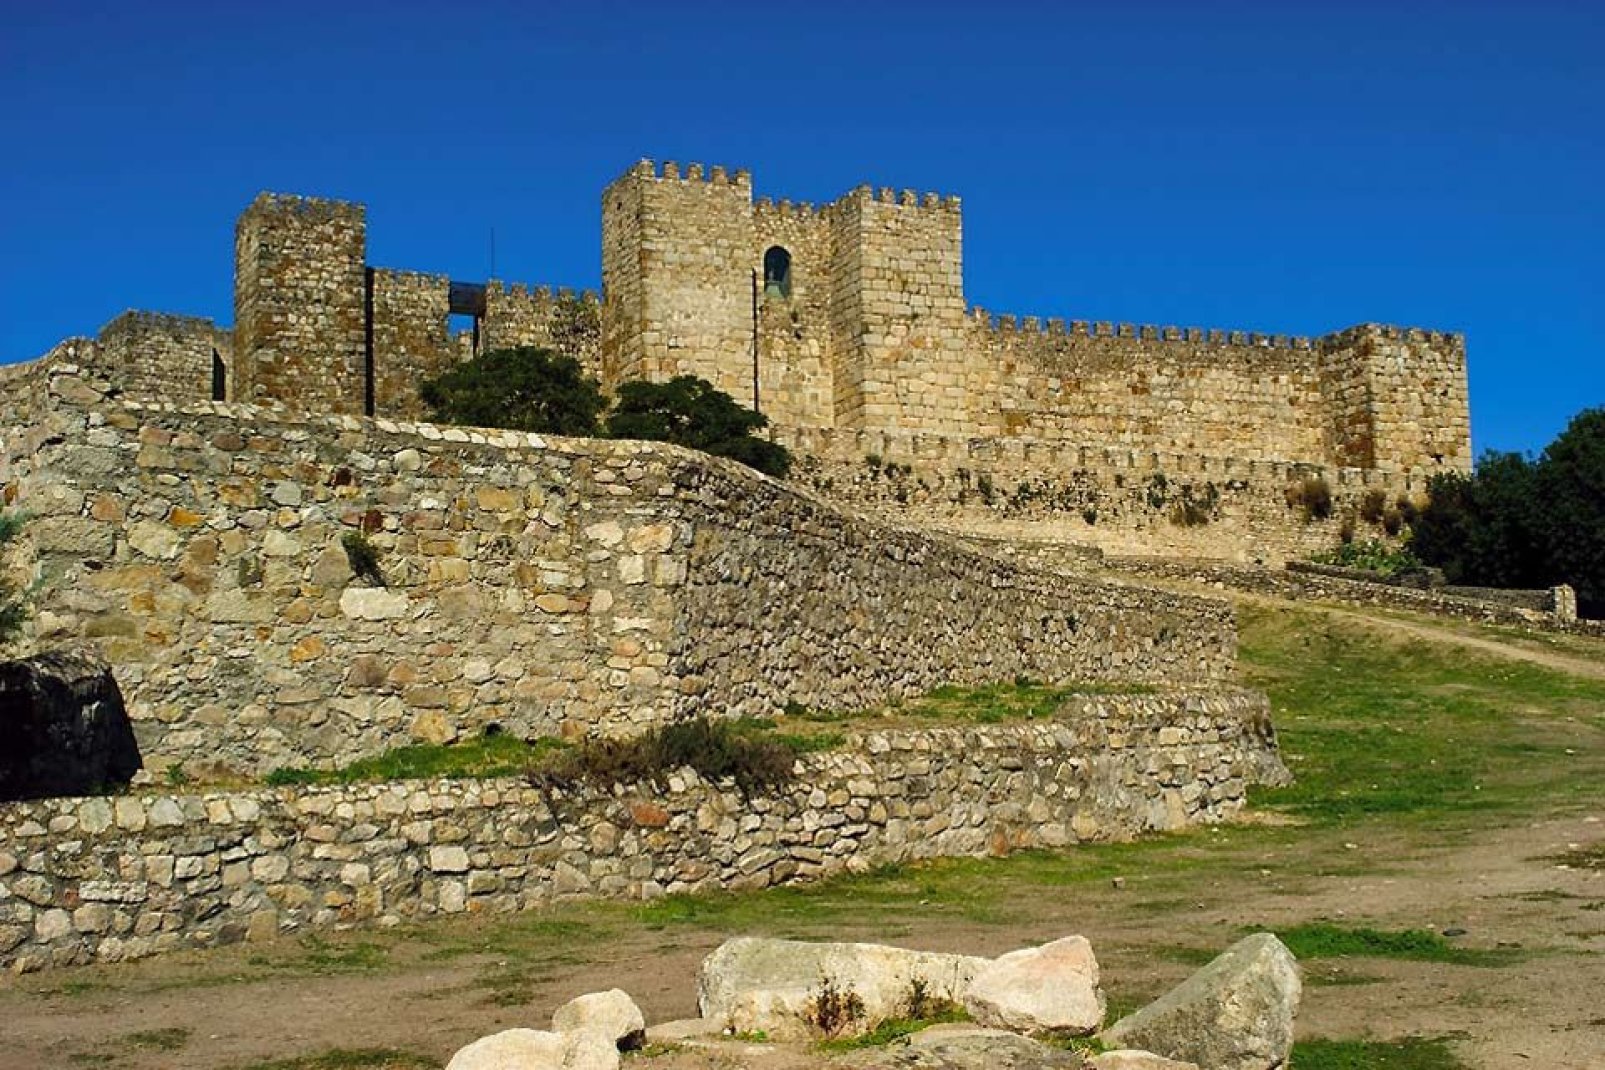 Este castillo se encuentra en lo alto de Trujillo. Se construyó en el siglo XIII sobre una antigua fortaleza árabe.